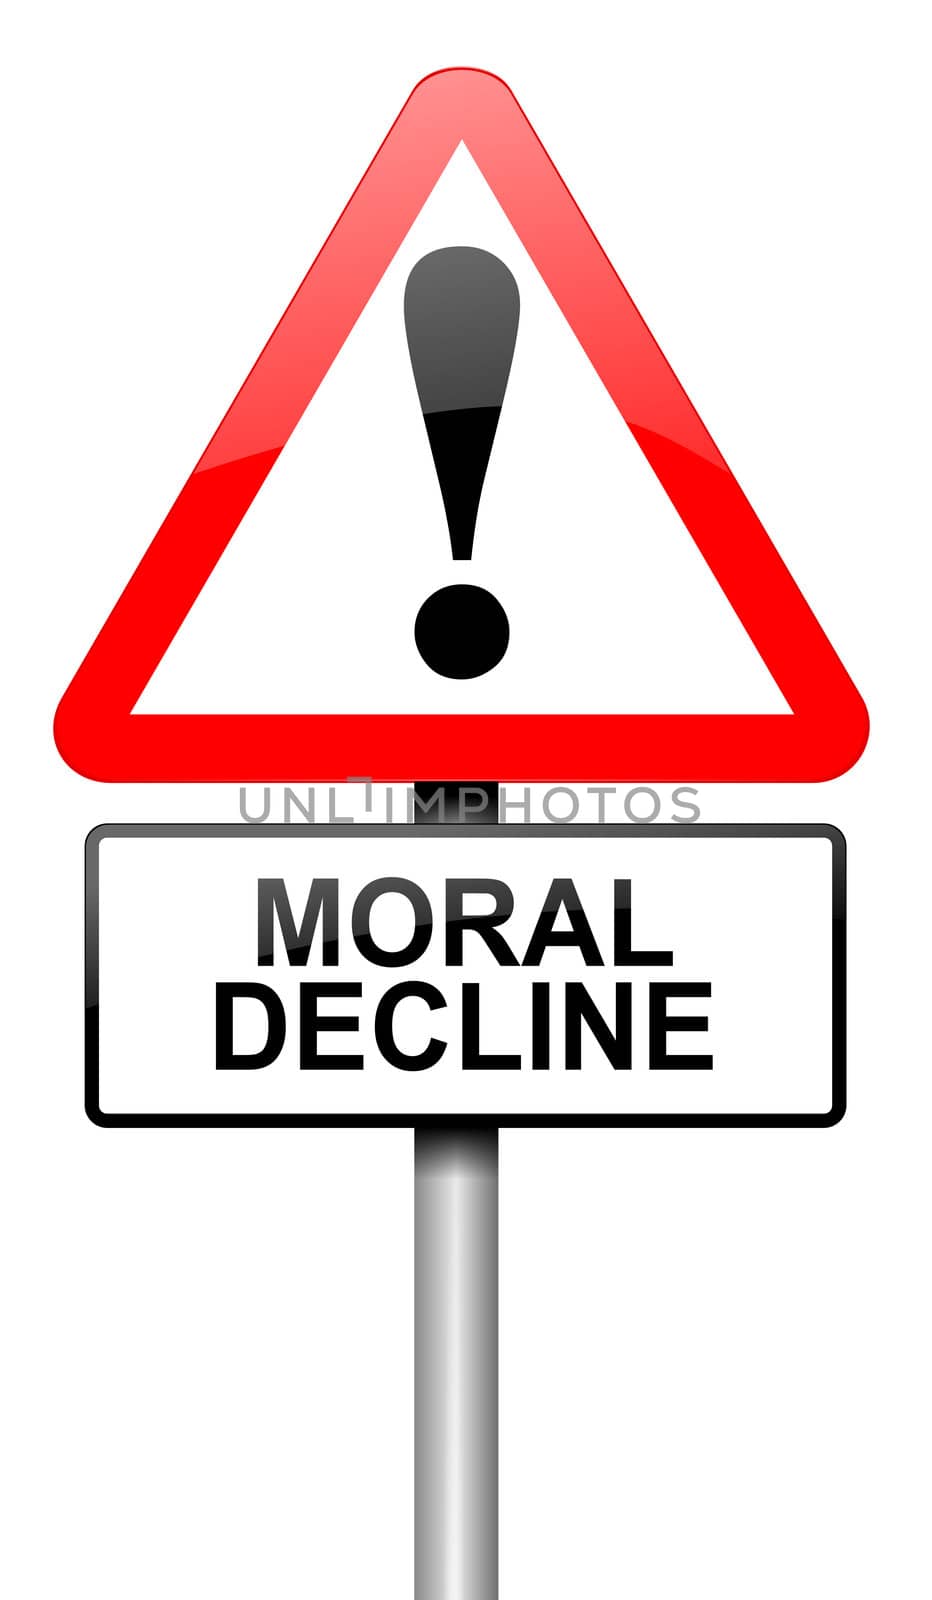 Moral decline concept. by 72soul